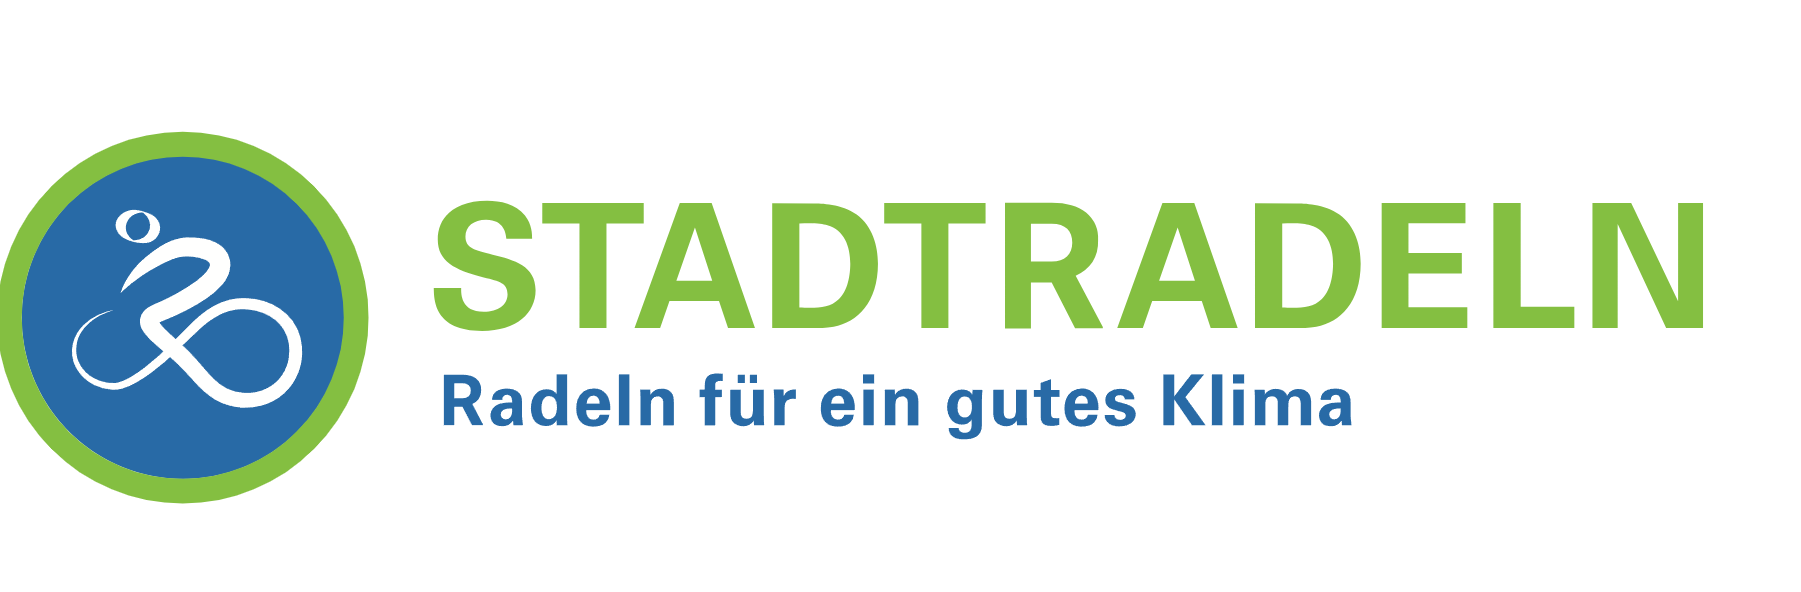 stadtradeln-logo